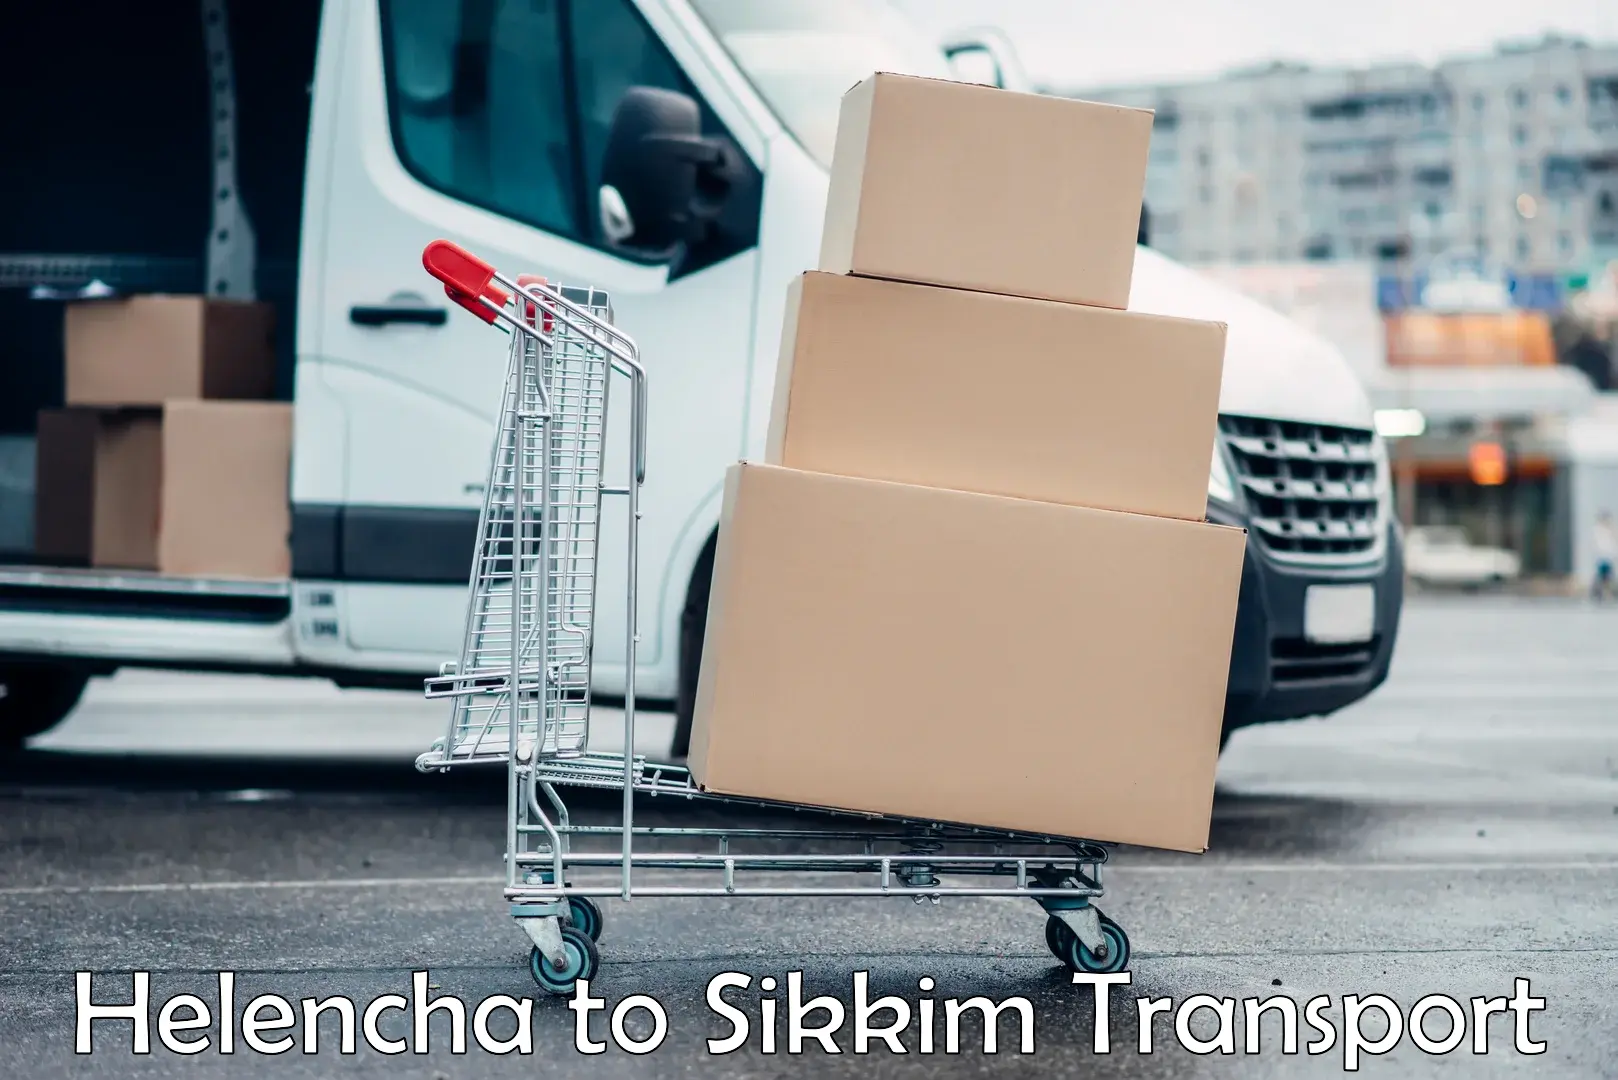 Furniture transport service Helencha to Namchi